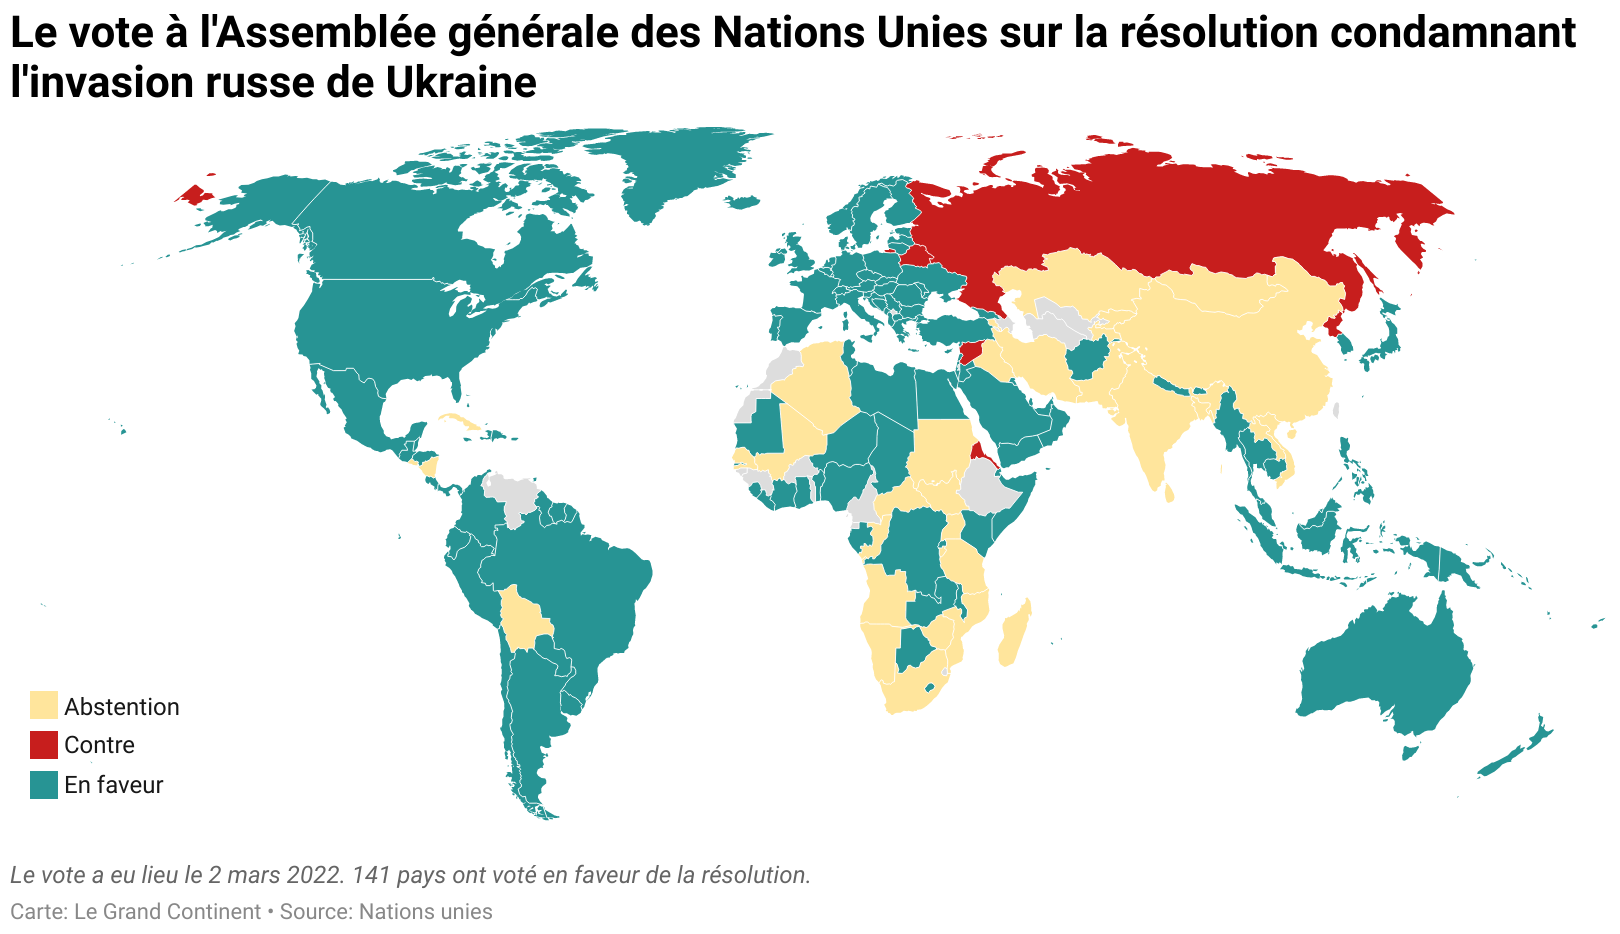 10 points synthétiques sur le vote à l'Assemblée générale des Nations Unies  - Le Grand Continent